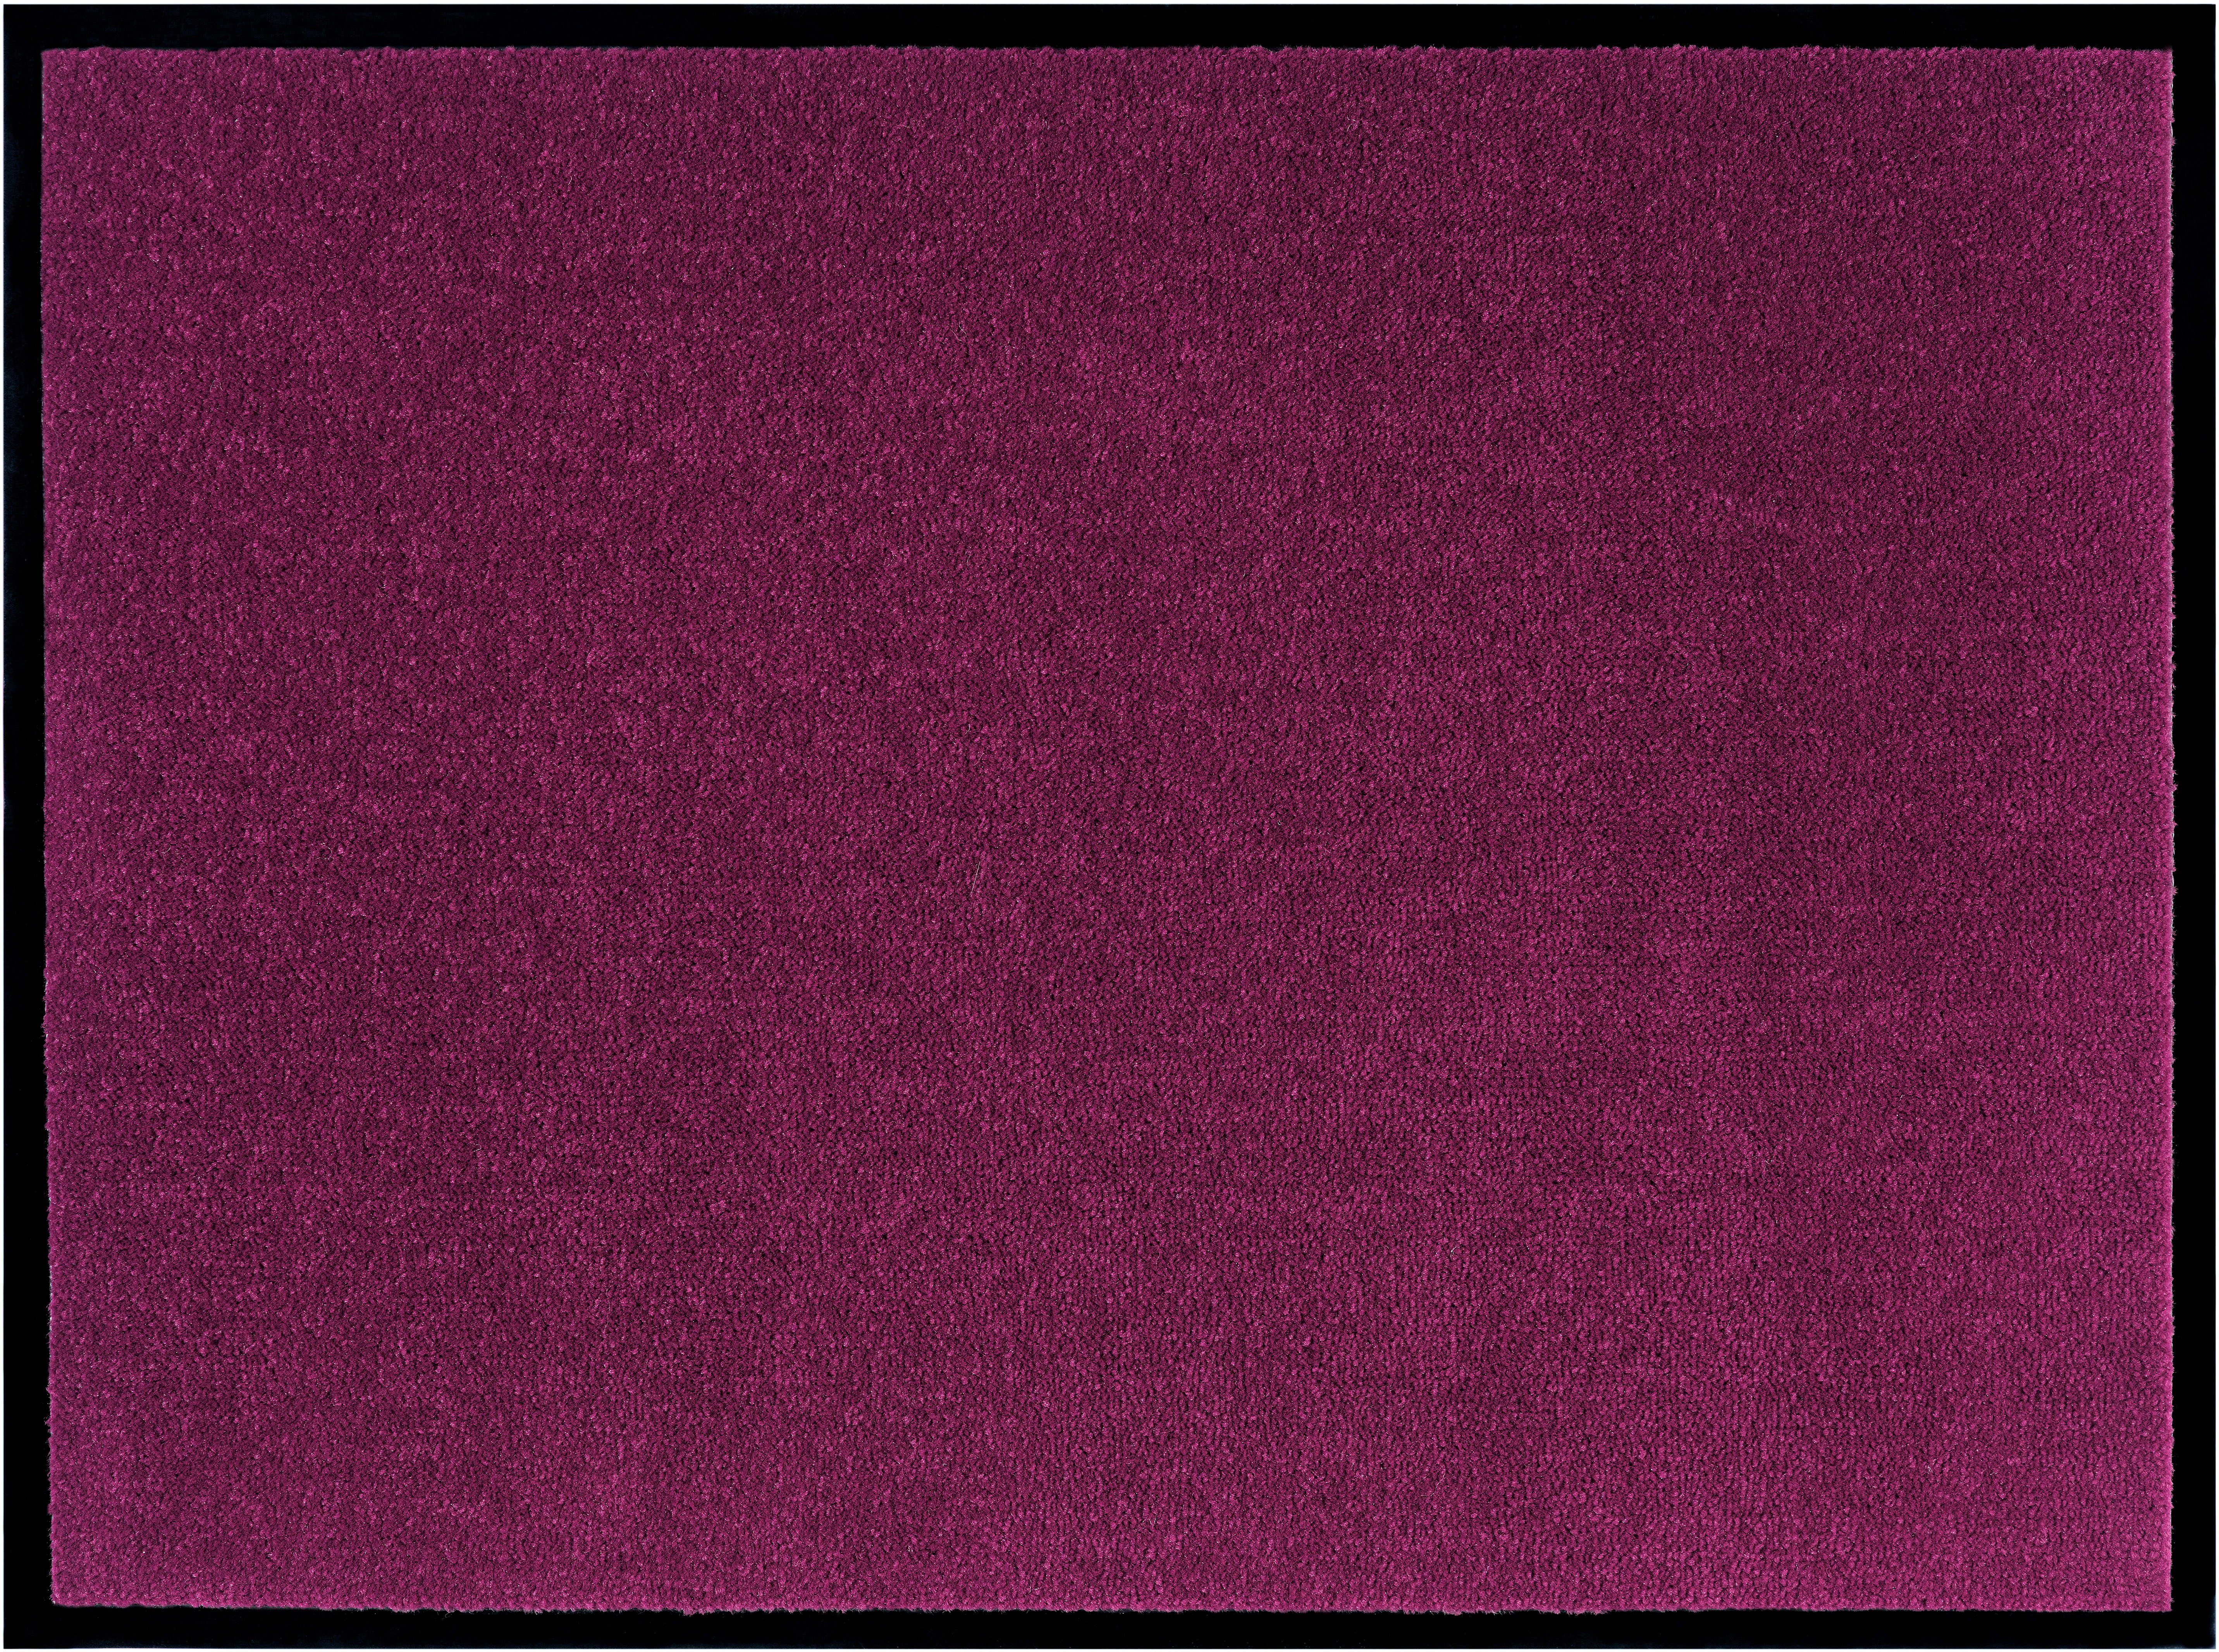 Fußmatte Triton, Home affaire, rechteckig, Höhe: 7 mm, waschbar, Uni-Farben-Design, rutschfest, robust, pflegeleicht violett